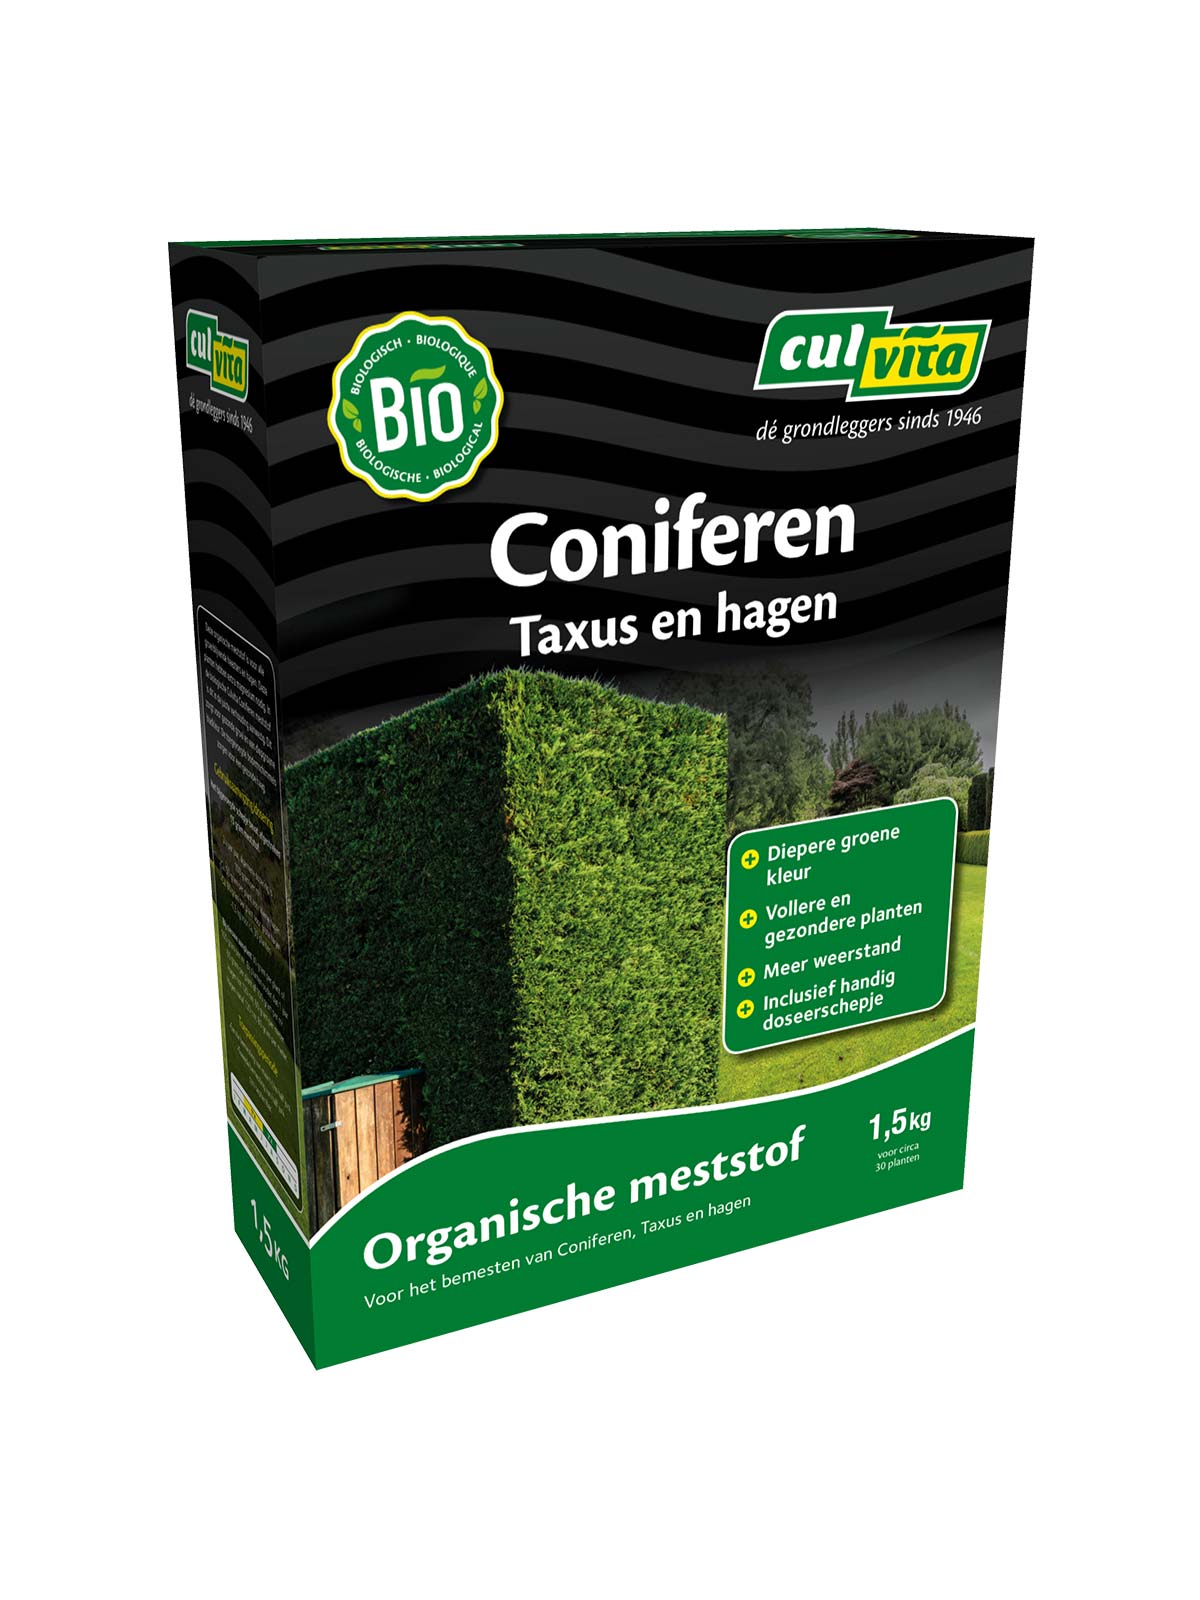 Culvita Coniferen meststof is voor alle groenblijvende heesters en hagen. Deze planten hebben extra magnesium nodig. In deze biologische meststof is dit in de juiste verhouding aanwezig. Dit zorgt voor gezonde groei en een diepgroene bladkleur. De toegevoegde bodemschimmels zorgen voor een gezonde haag.